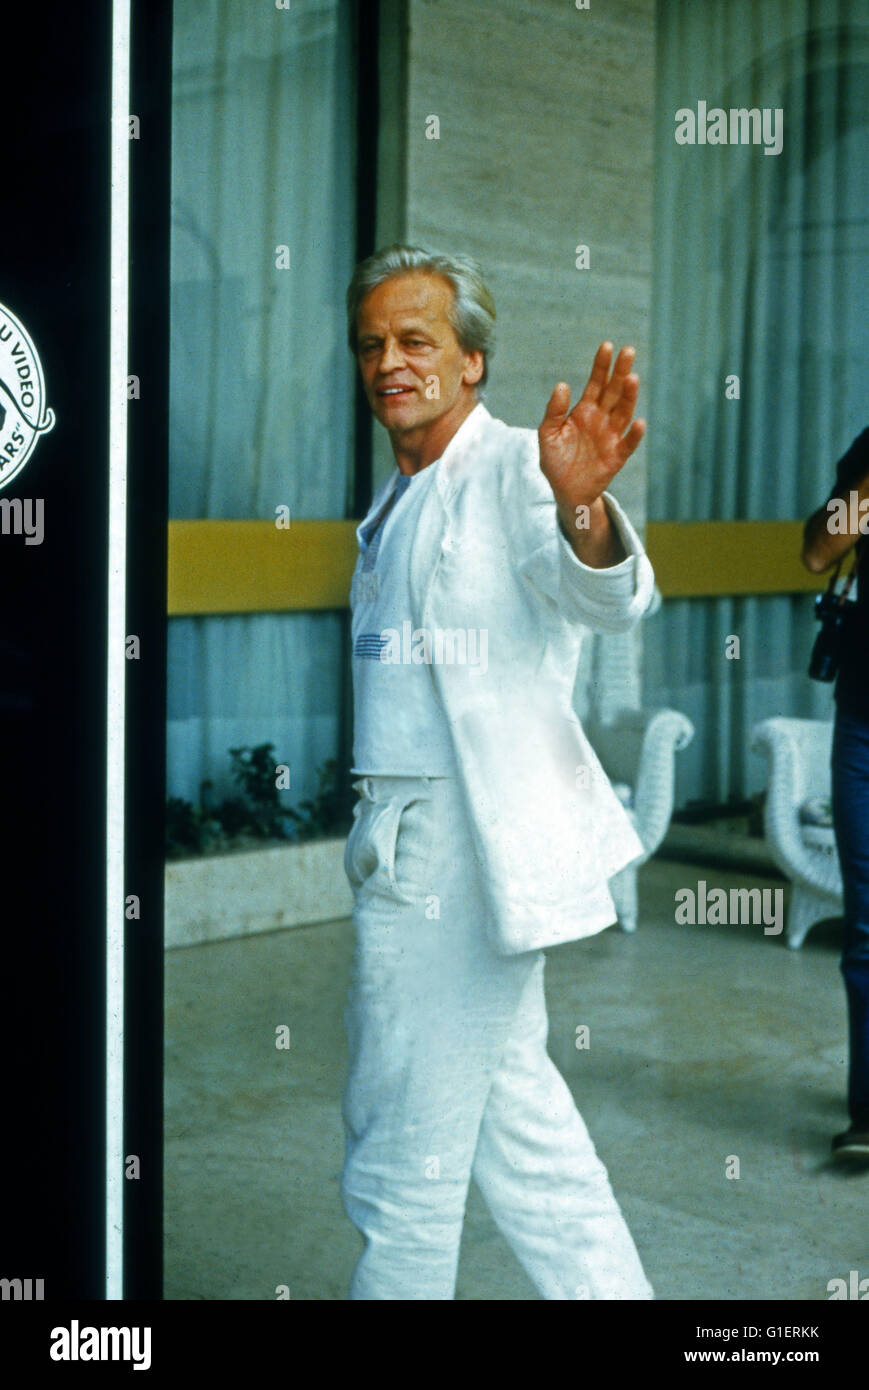 Der deutsche Schauspieler Klaus Kinski, 1990er Jahre. Attore tedesco Klaus Kinski, 1990s. Foto Stock